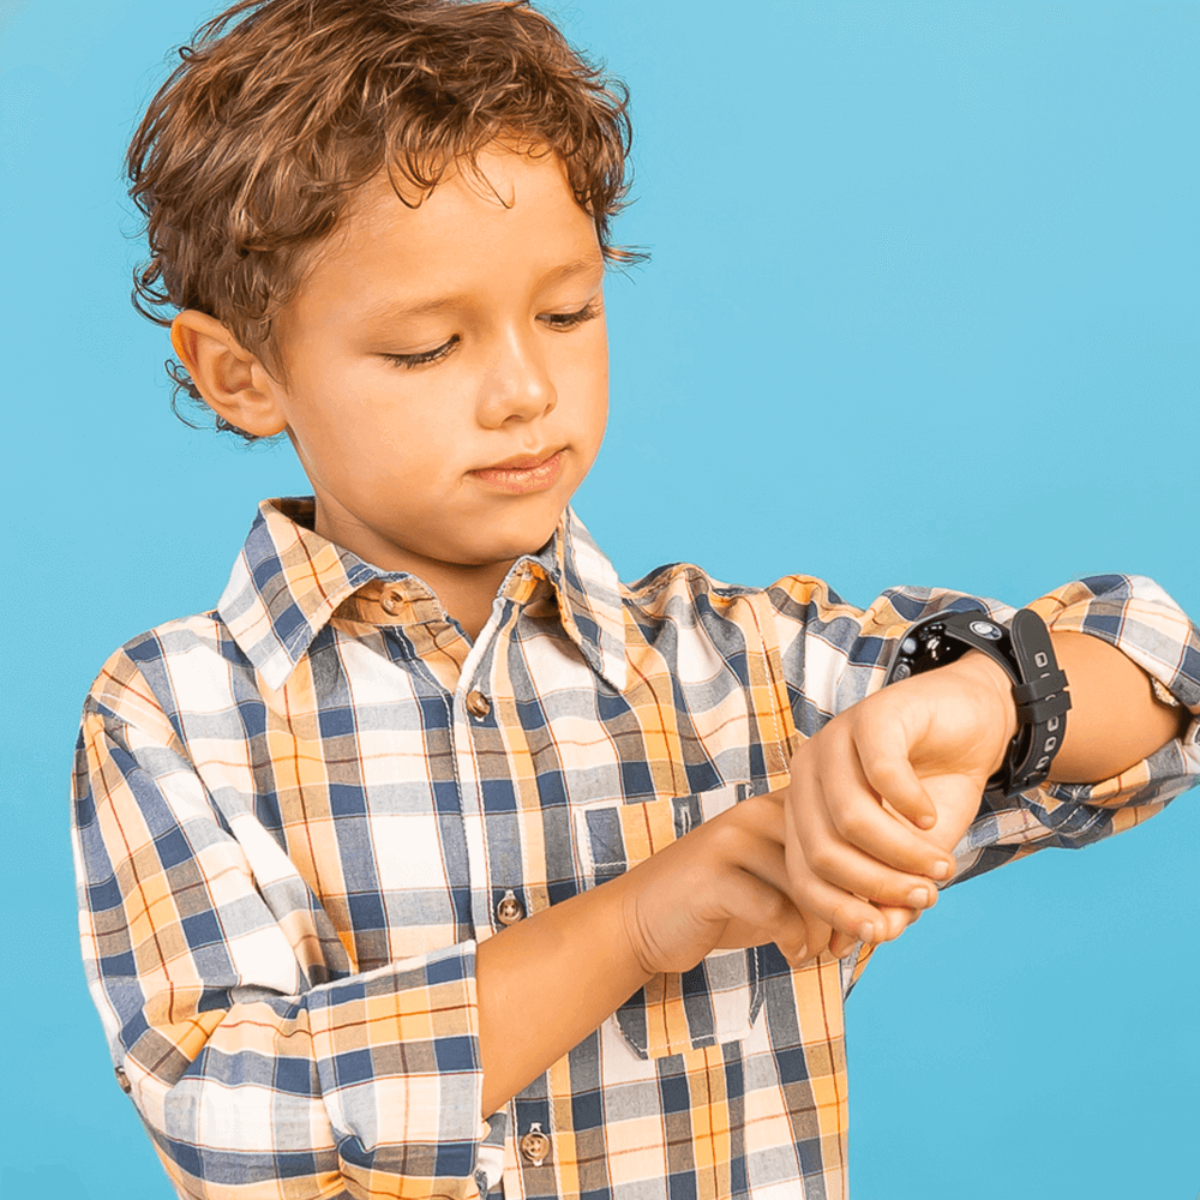 SOYMOMO Space Lite Kinder Smartwatch Schwarz 10 cm, Silikon